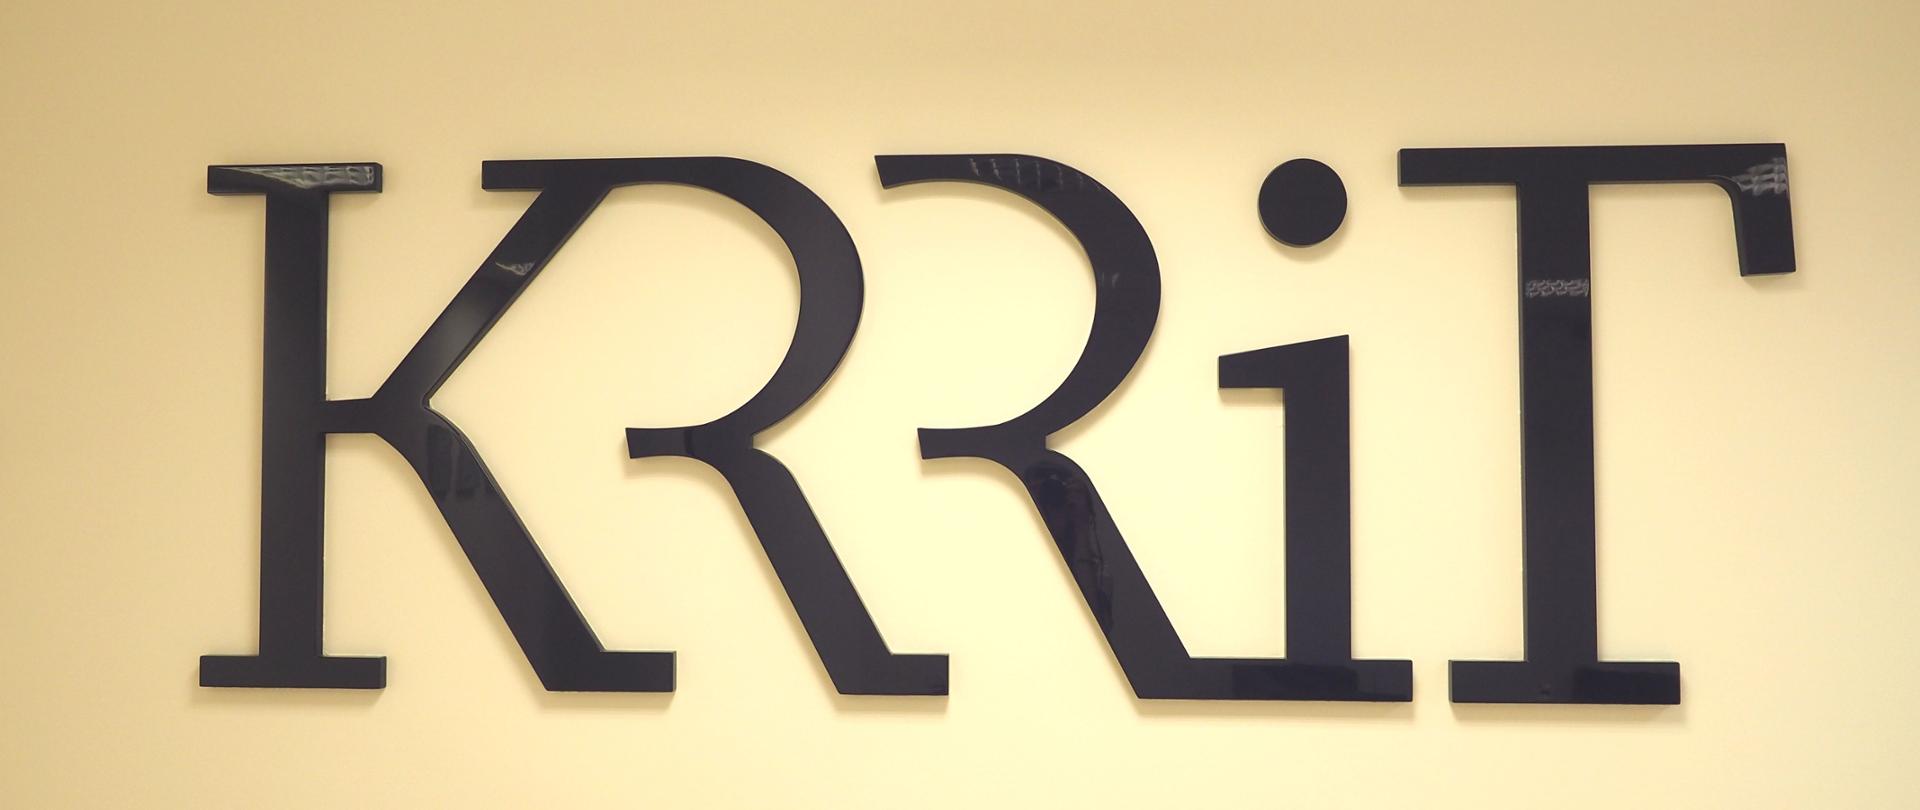 Zdjęcie poziome. Czarny napis "KRRiT" na białej ścianie. 